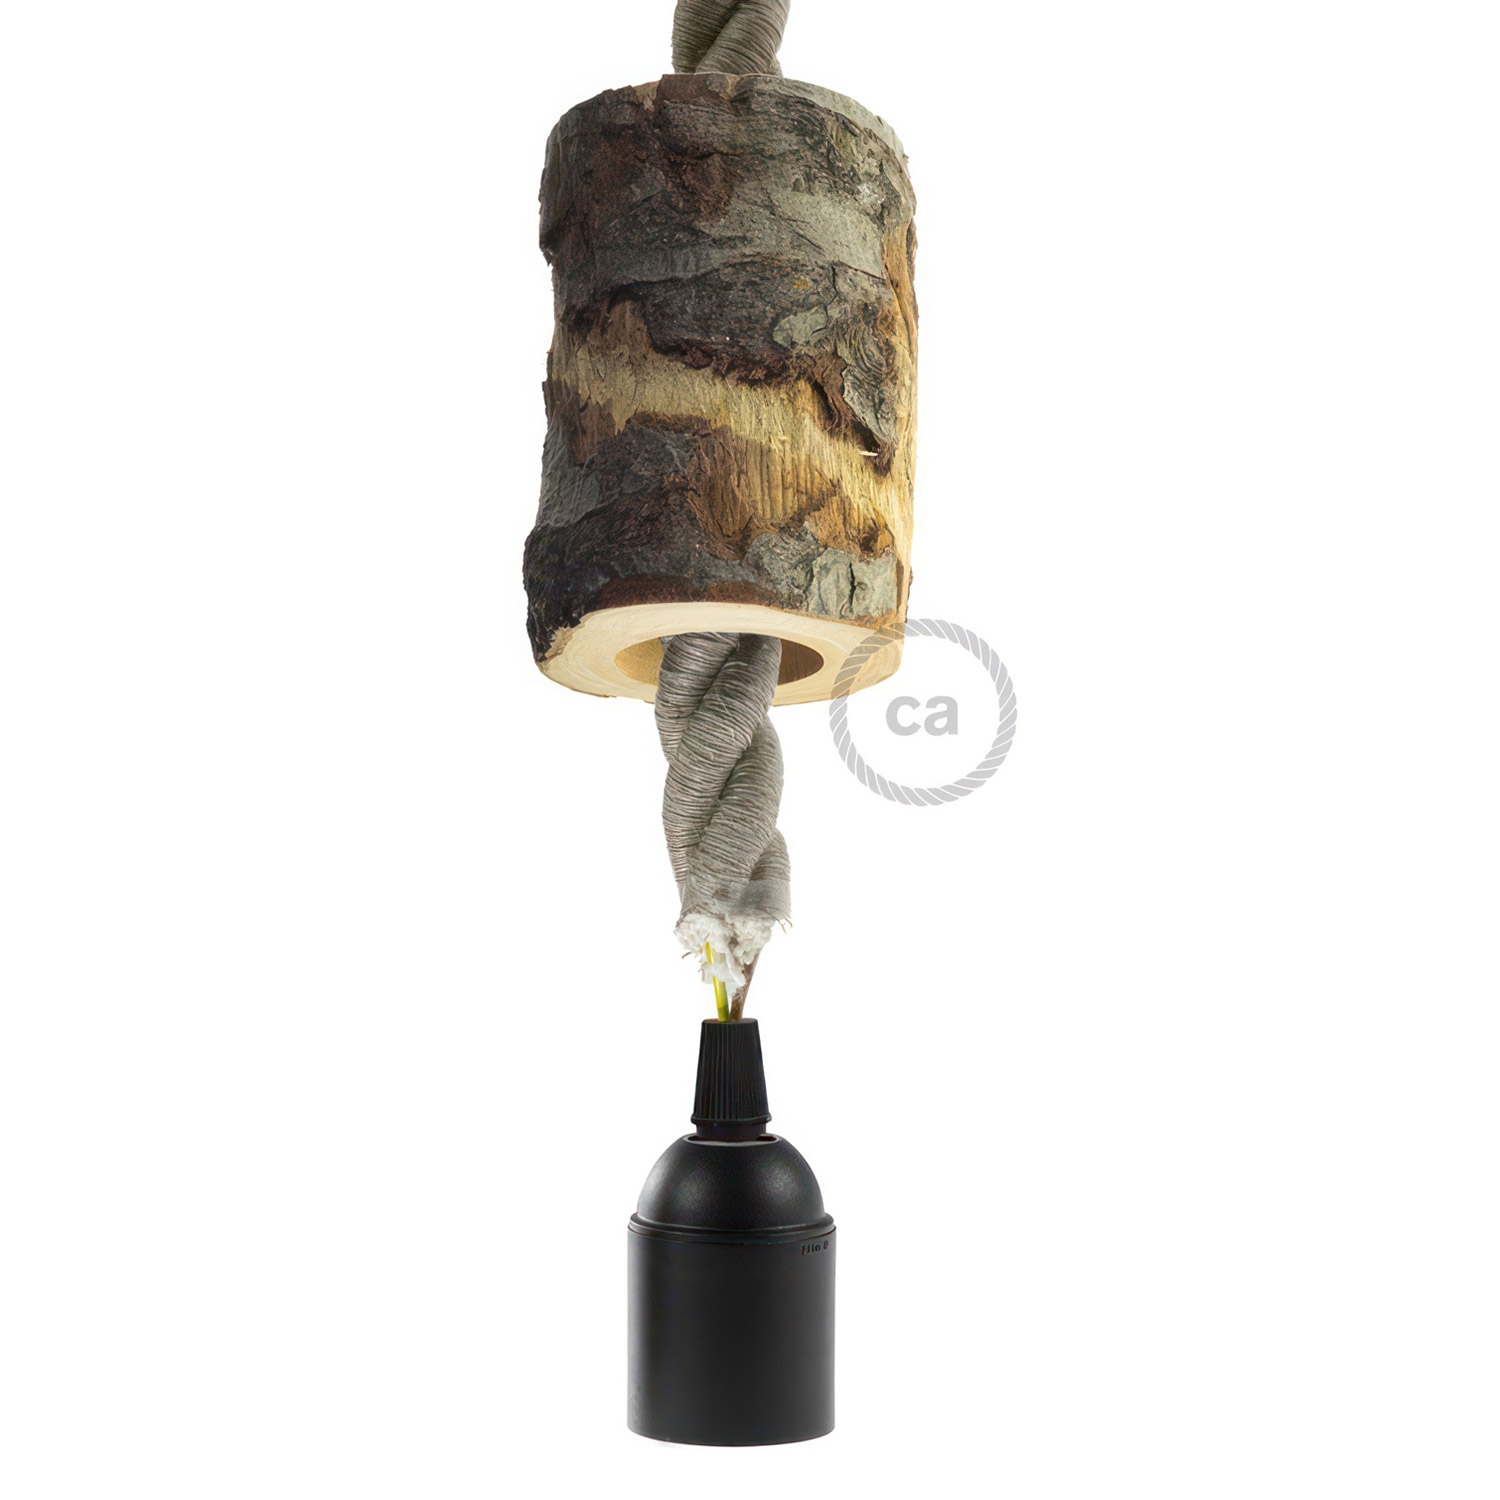 Small bark E27 lamp holder kit